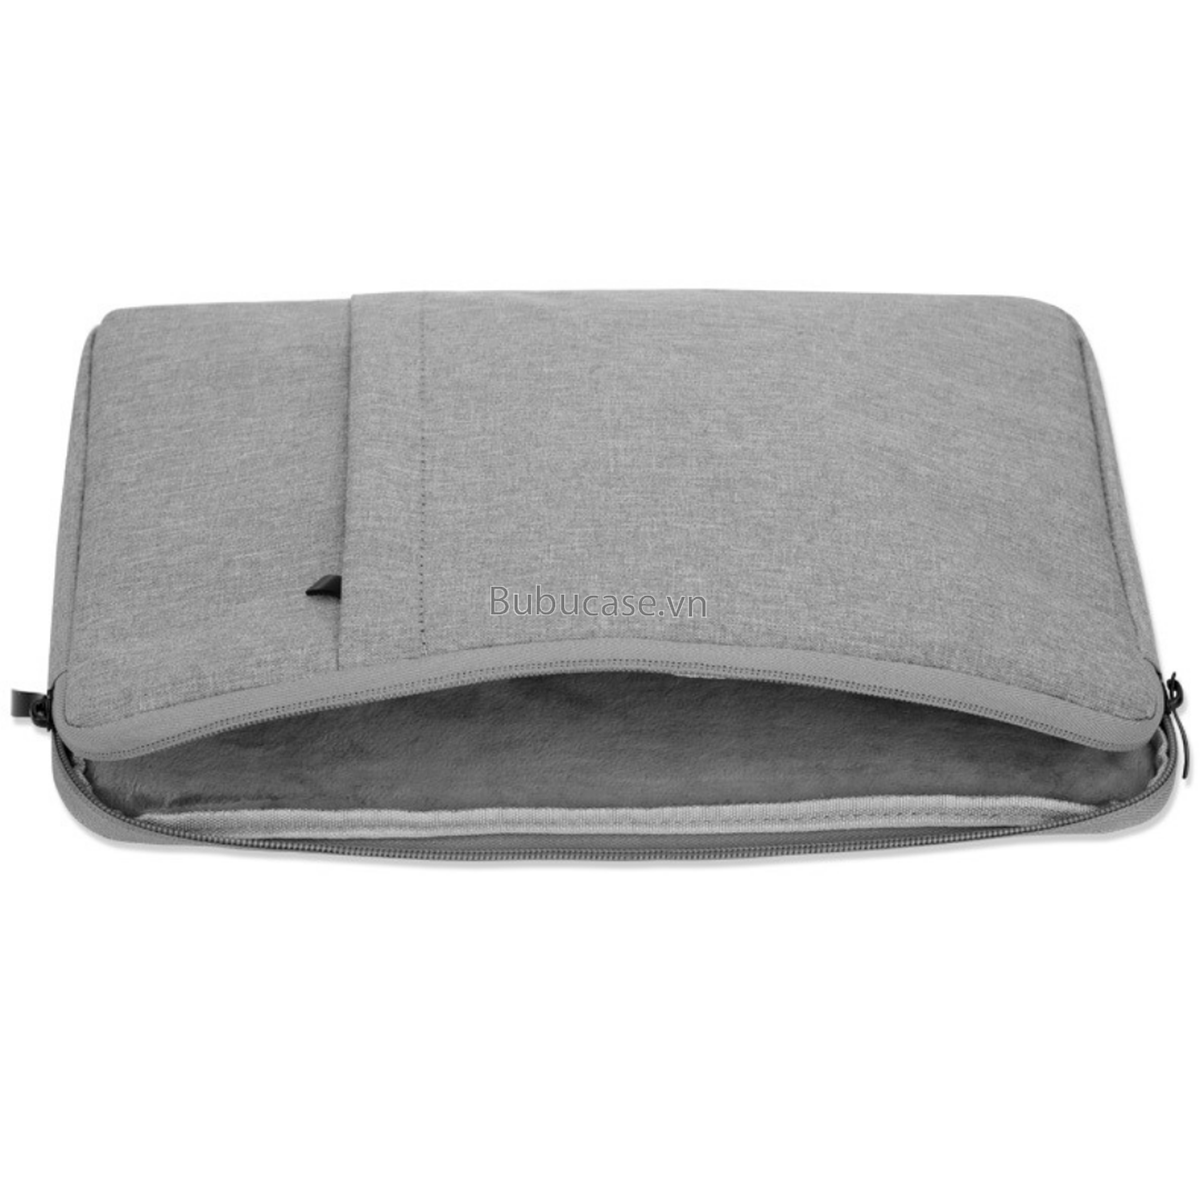 Túi Laptop 2 Dây Kéo Vải Agni Cloth Chống Thấm Đựng Laptop / Macbook 13 inch, 14 inch, 15 inch, 15.6 inch cao cấp - Bảo vệ chống va chạm, Chống thấm nước - Hàng chính hãng